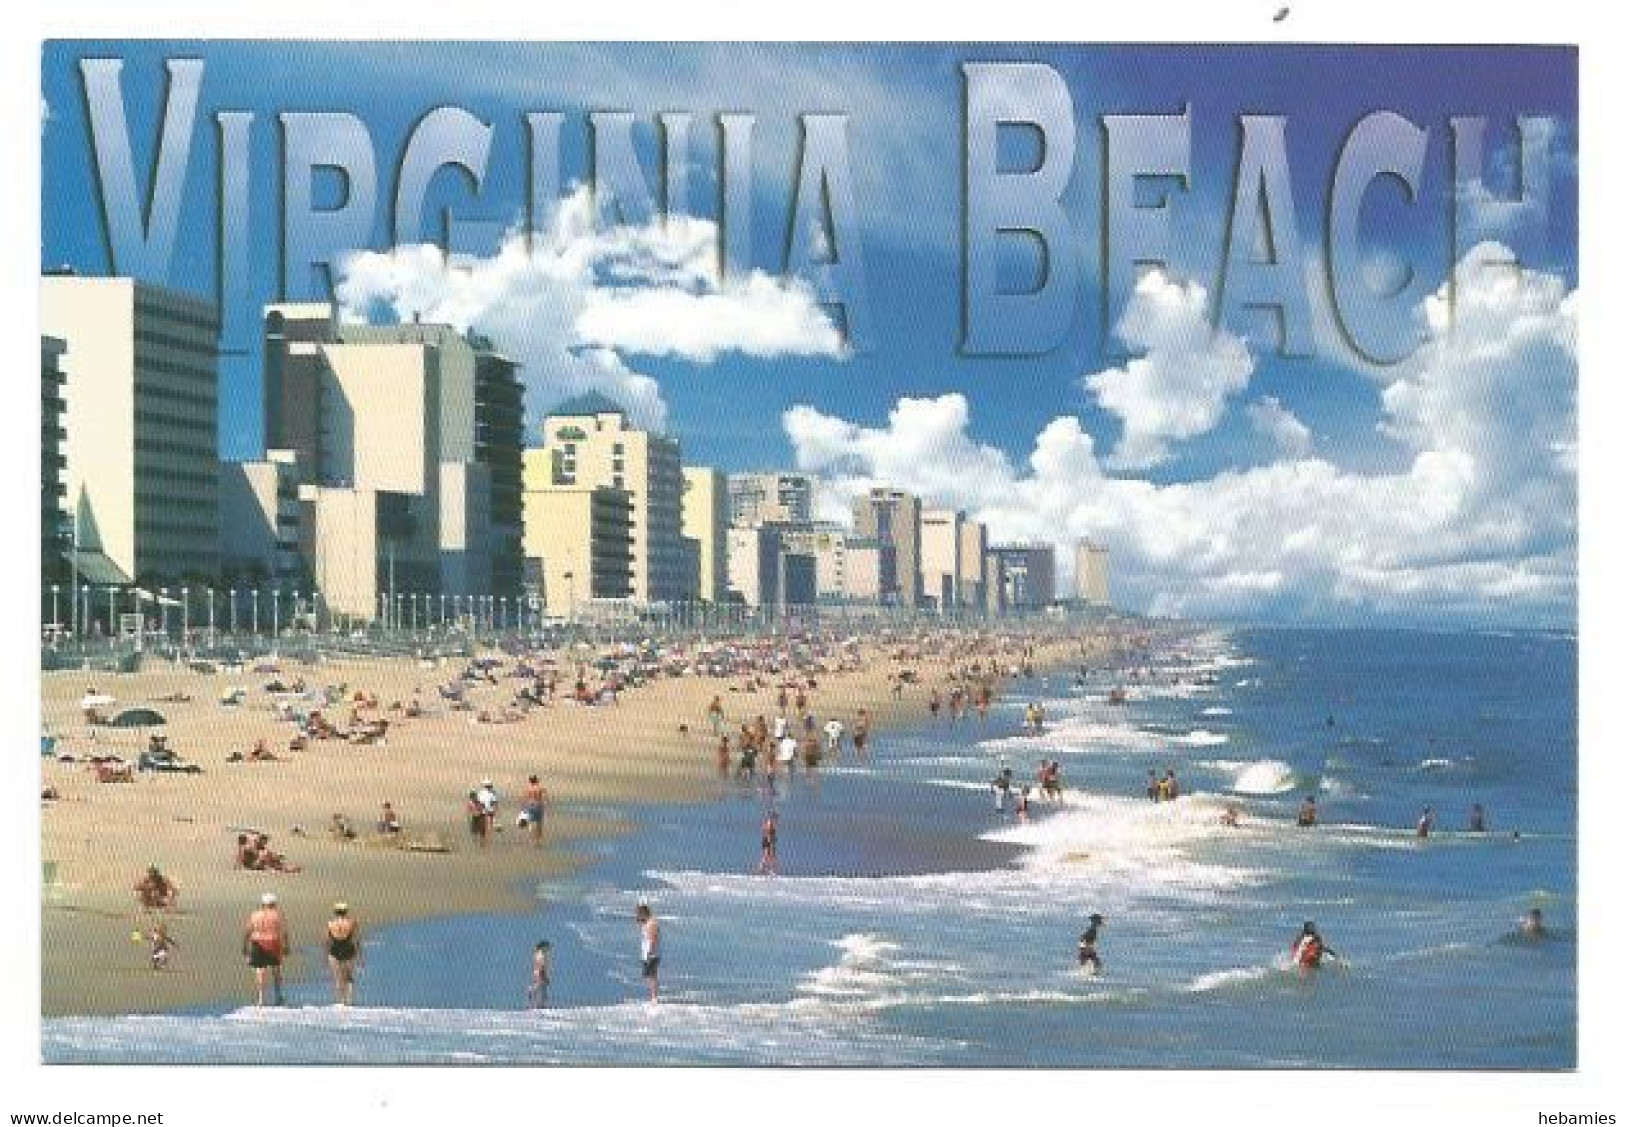 VIRGINIA BEACH - VIRGINIA - USA - - Virginia Beach